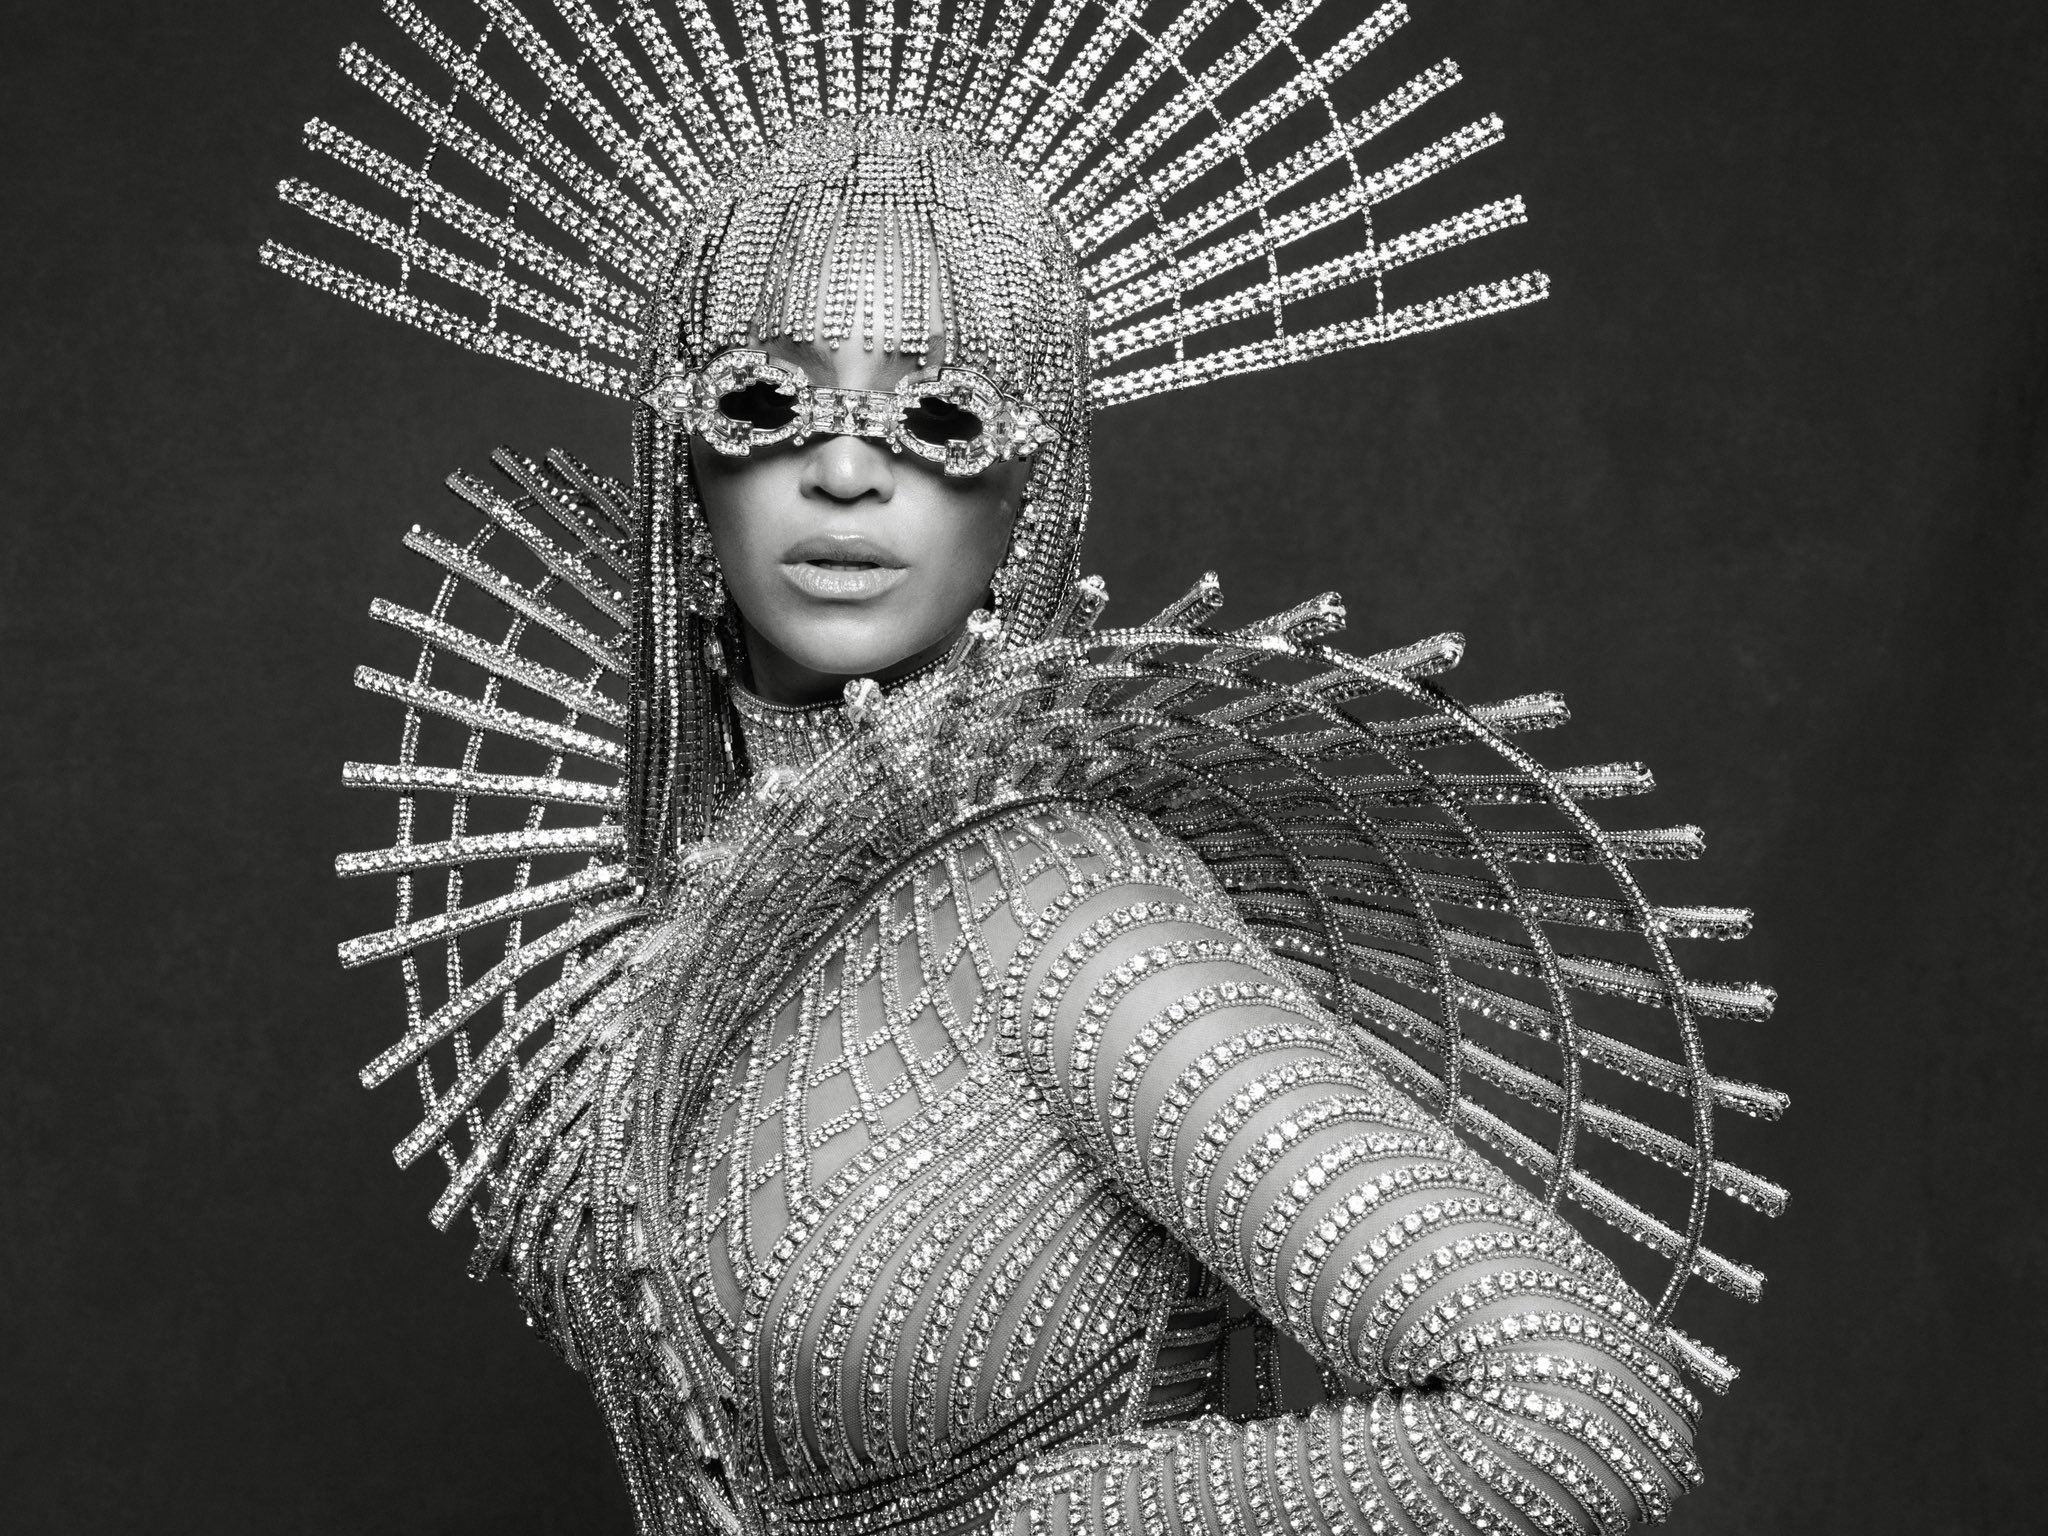 Com brasileira no casting, Beyoncé apresenta coleção em parceria com a Balmain